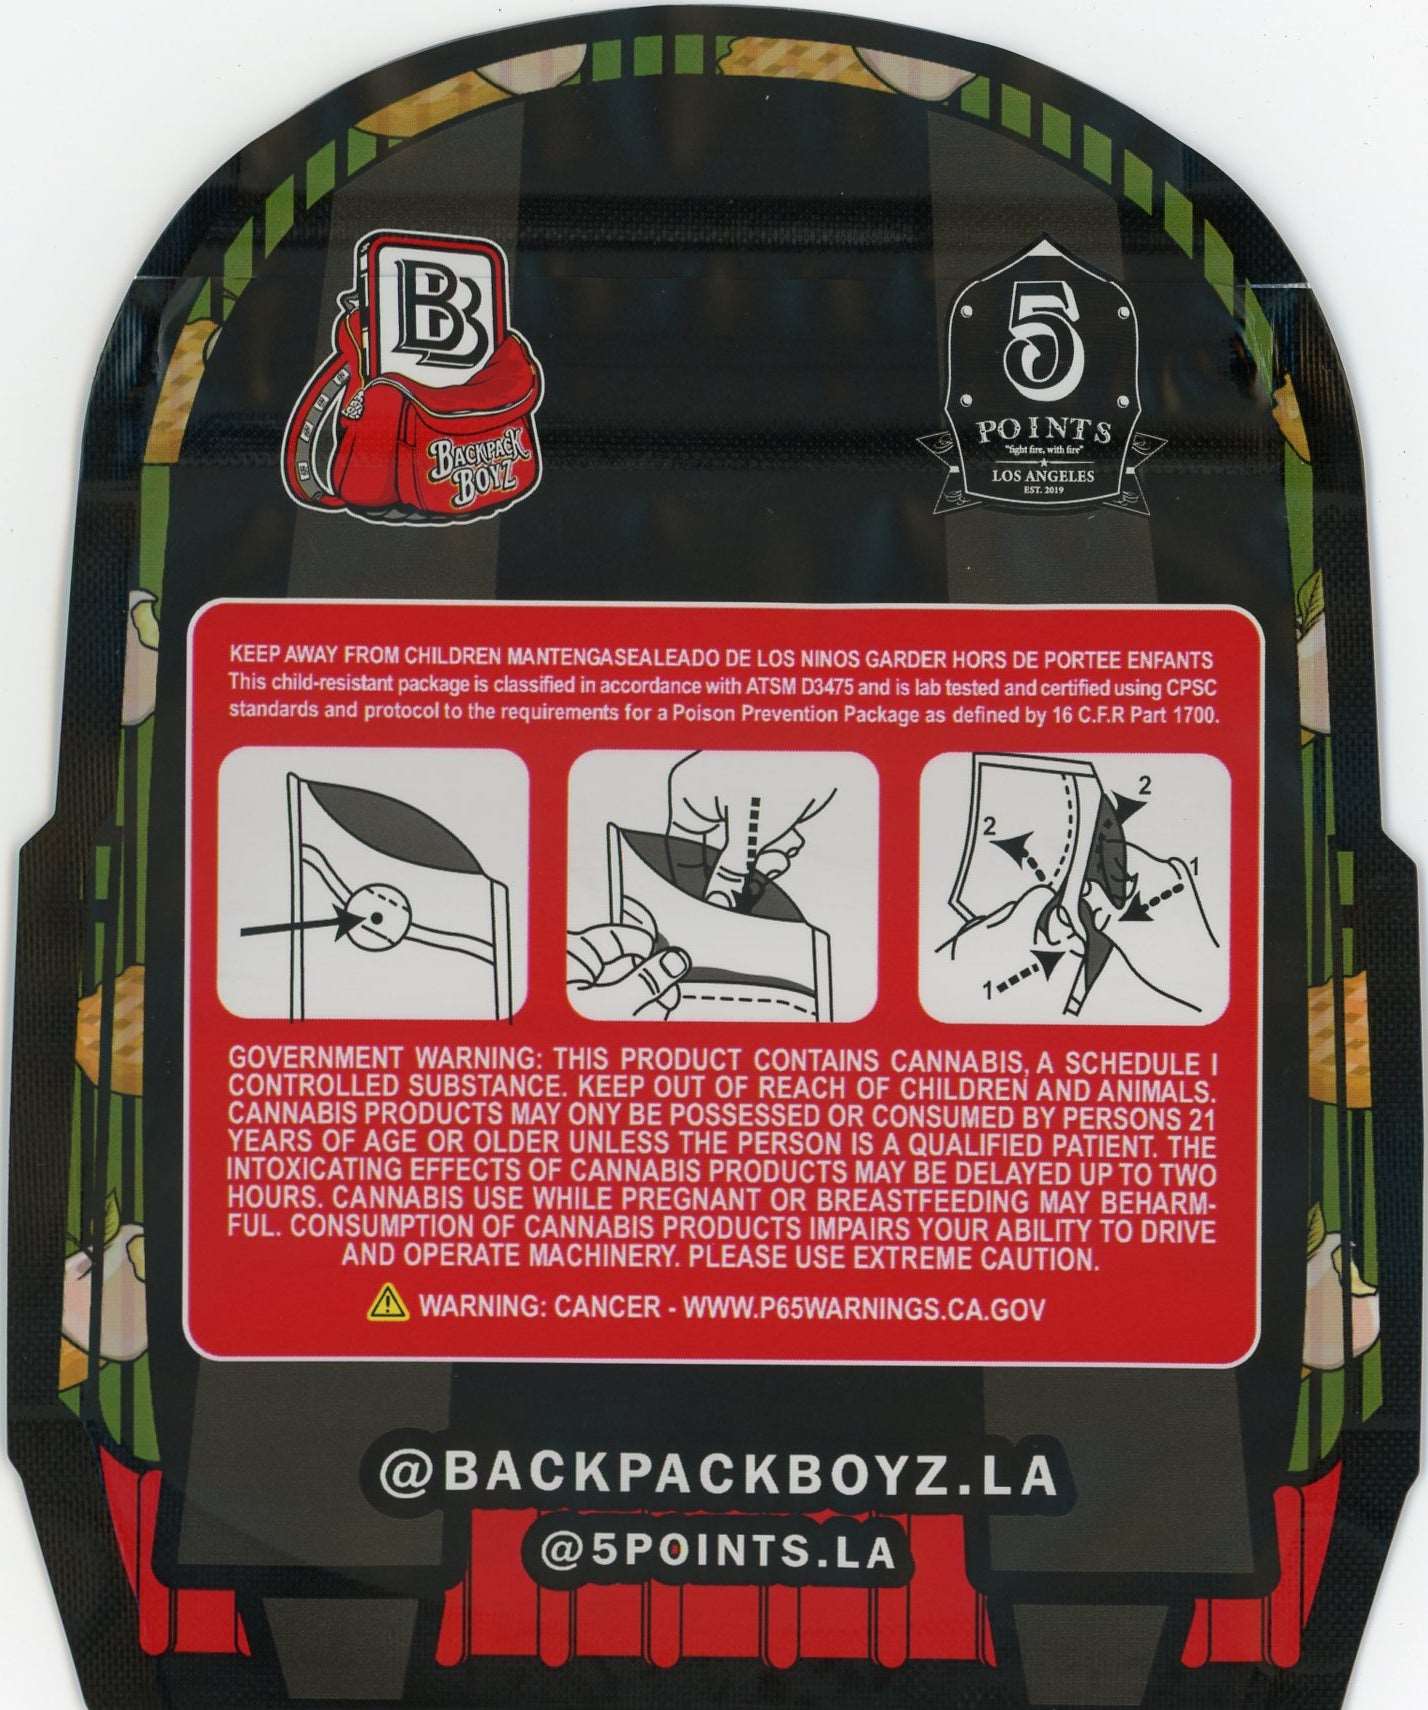 Backpack Boyz Mylar Bags 3.5g - White Apple Tart